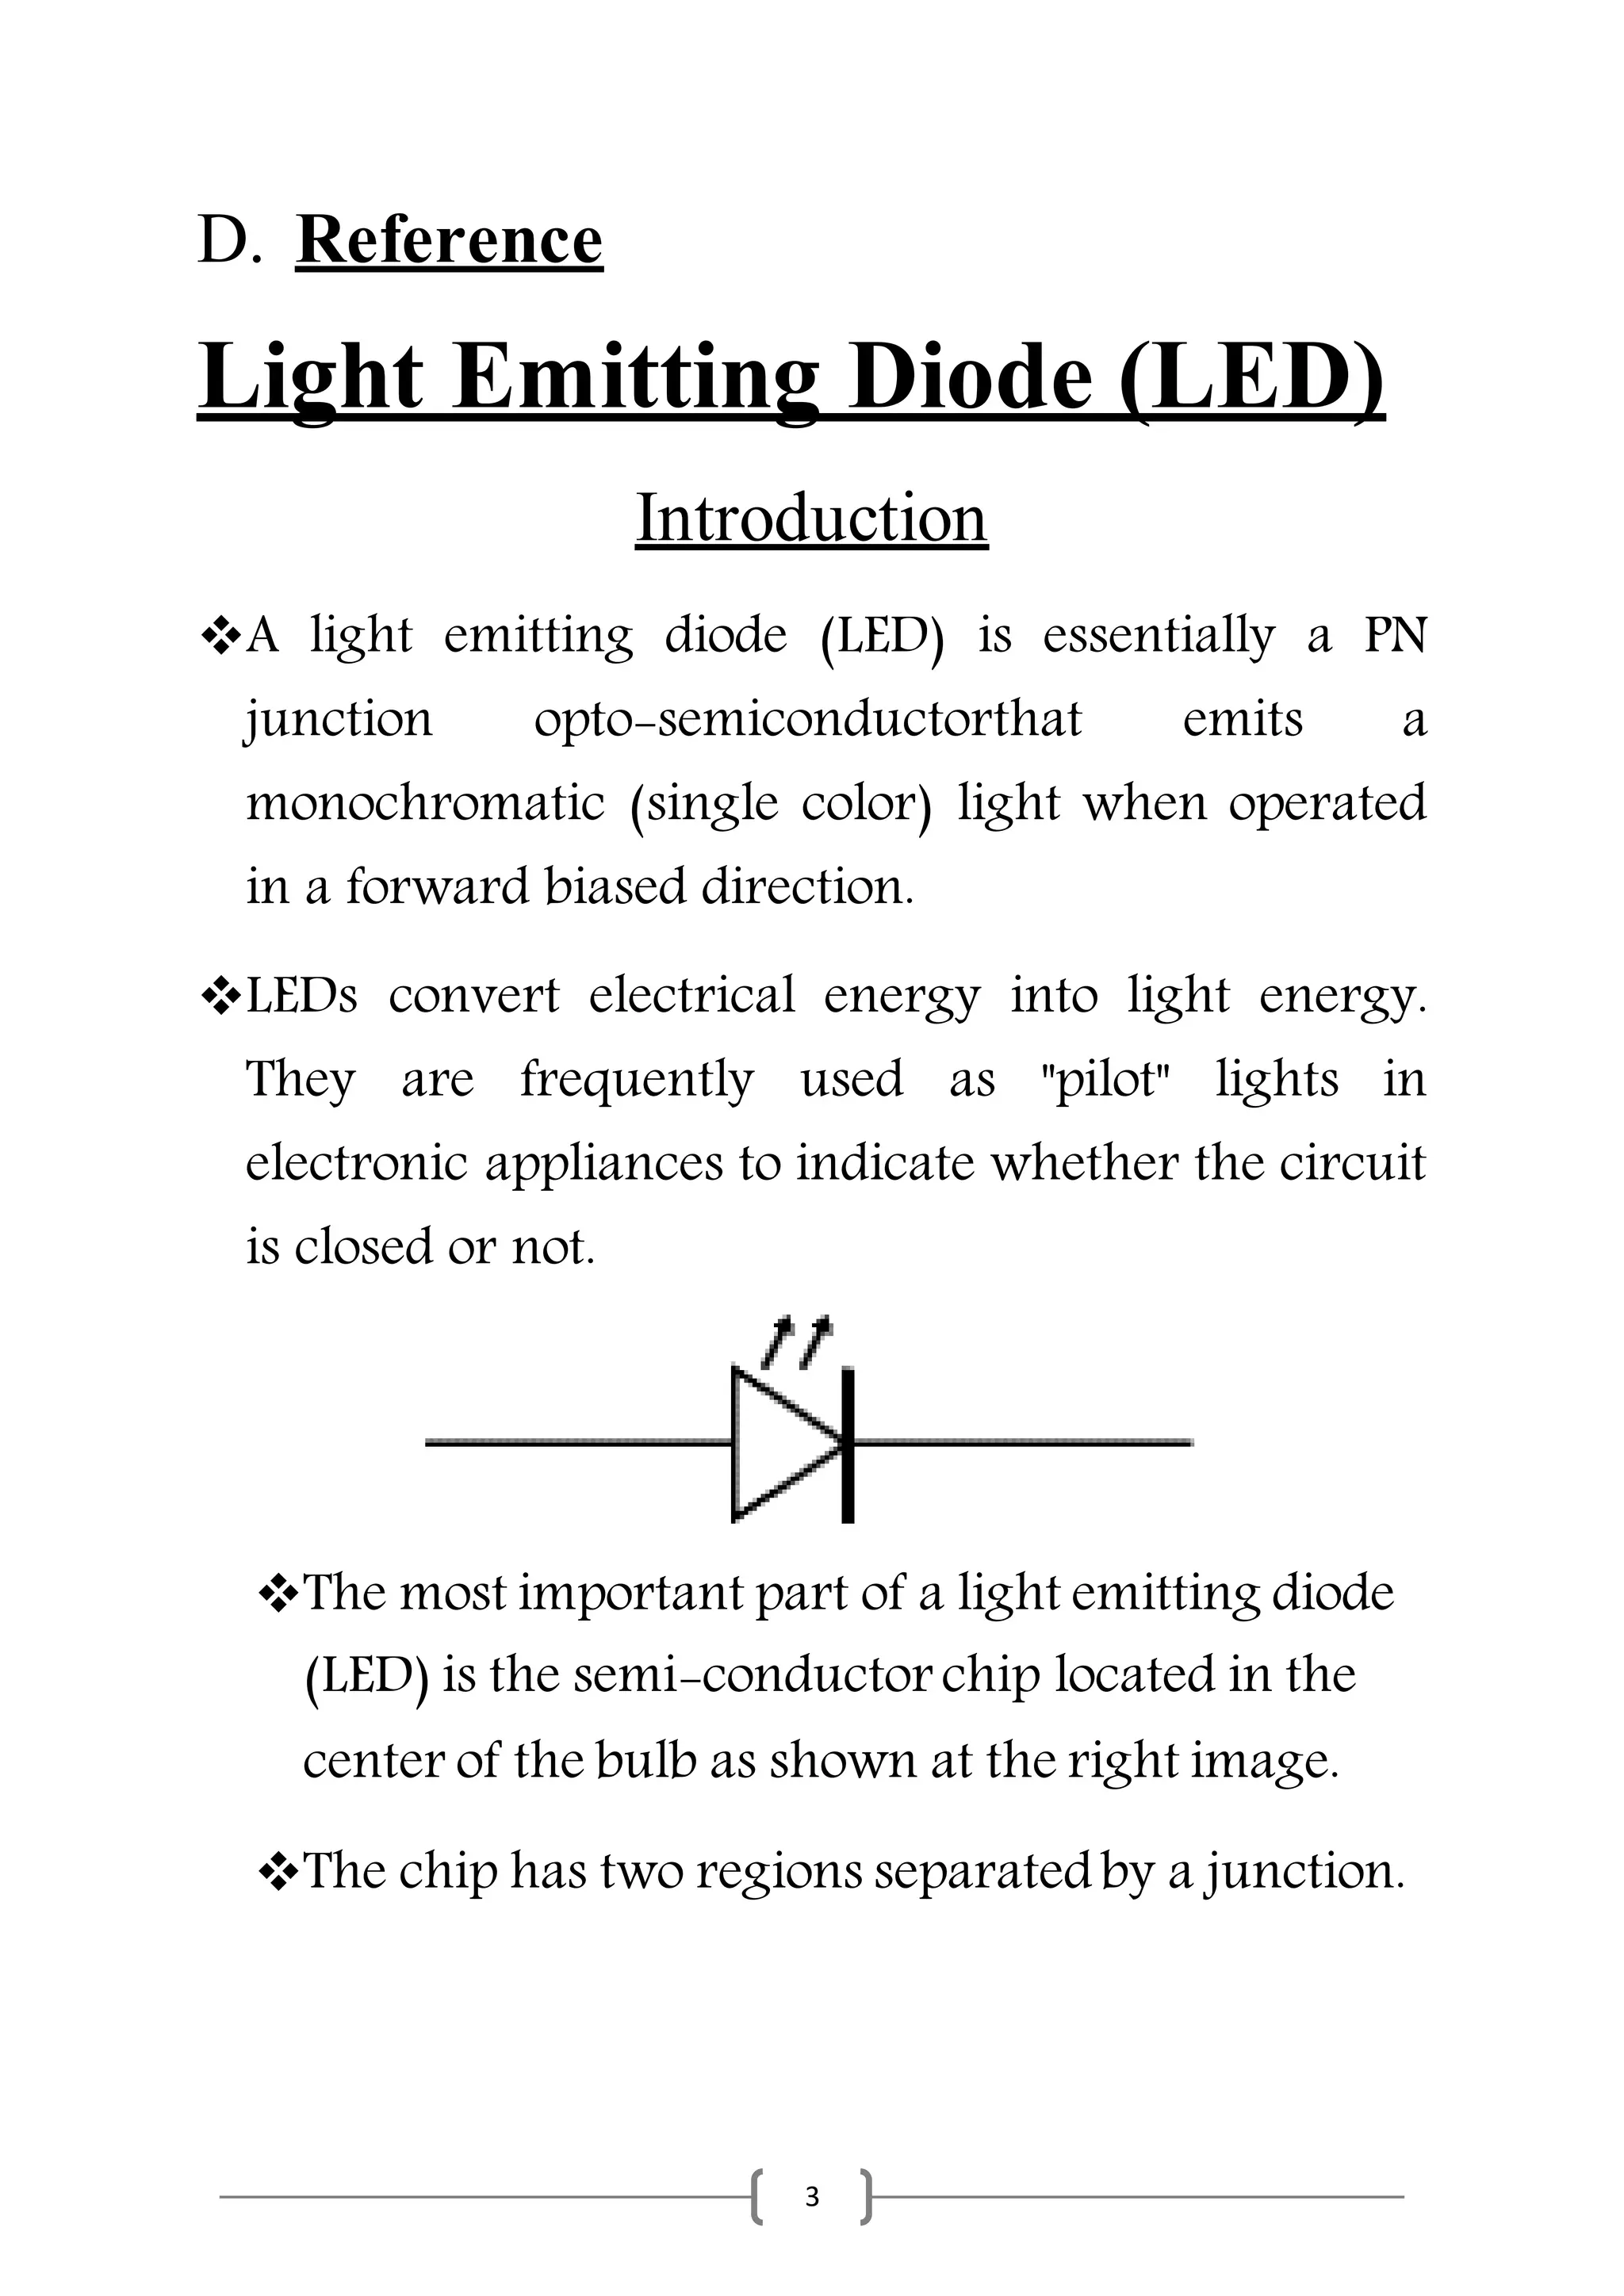 Blind pige sandhed Light Emitting Diode Presentation Report